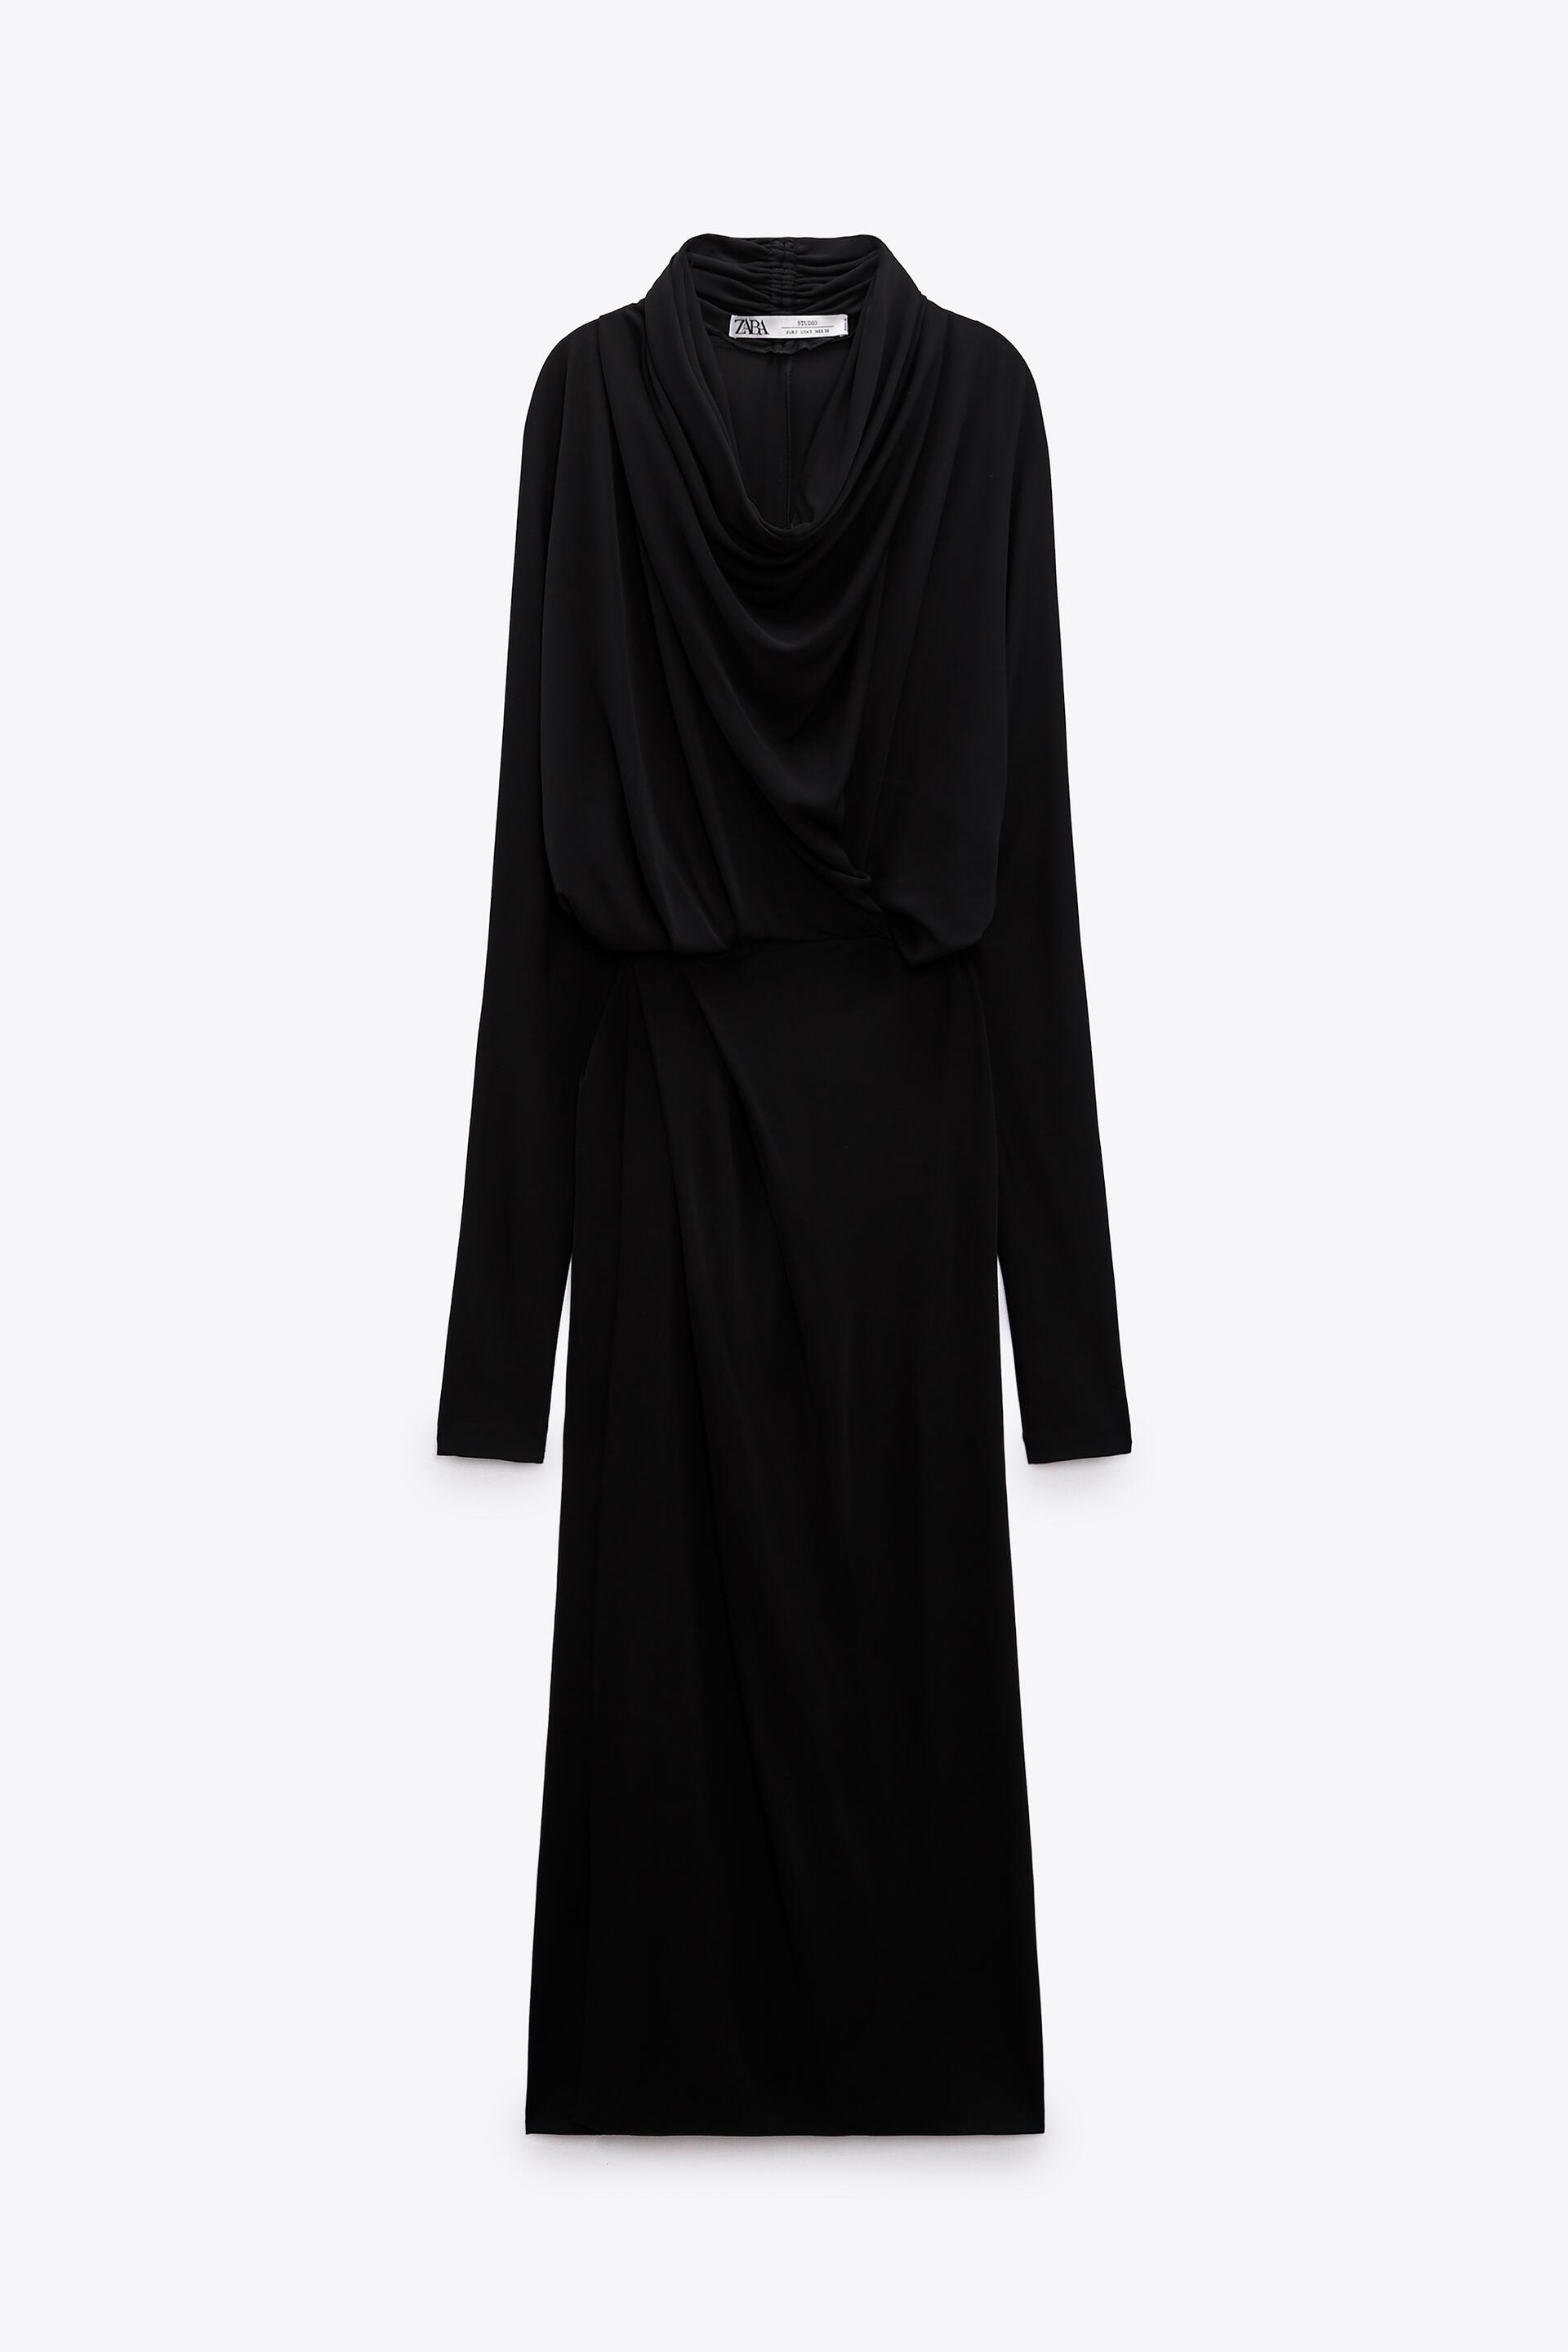 Платье женское ZARA 02089001 черное M (доставка из-за рубежа)